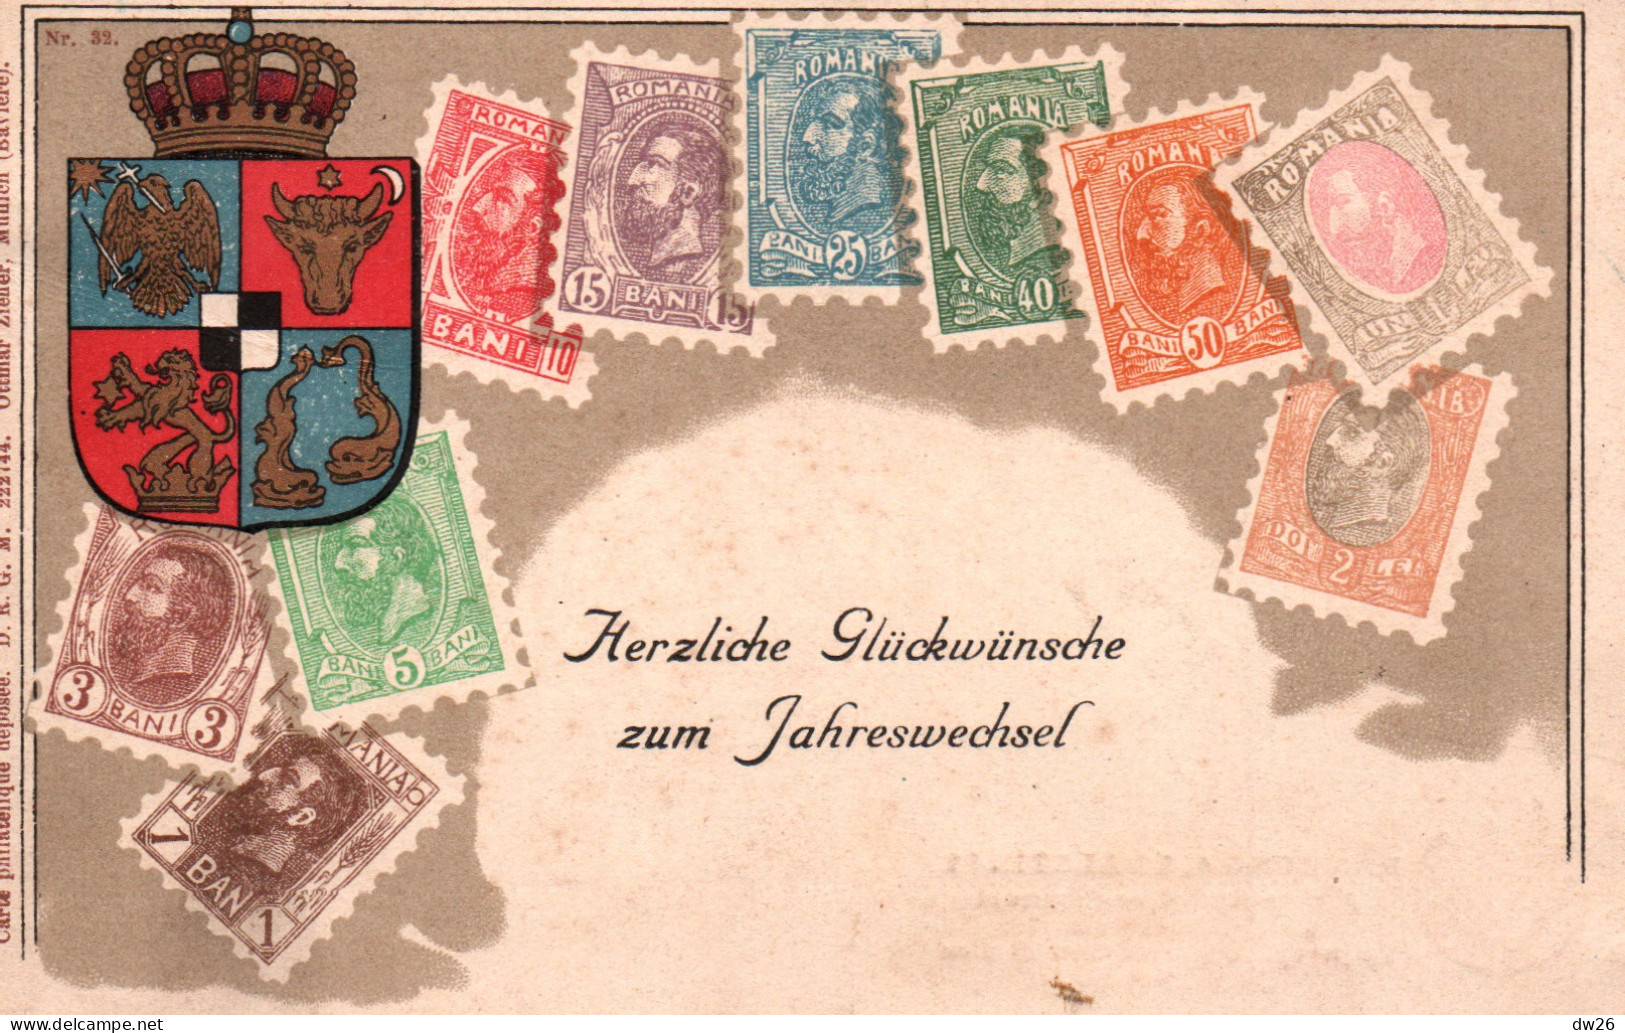 Représentation De Timbres: Stamps Romania (Roumanie) Carte Ottmar Zieher N° 32 - Publicité Kaffee Beck, Hamburg - Stamps (pictures)